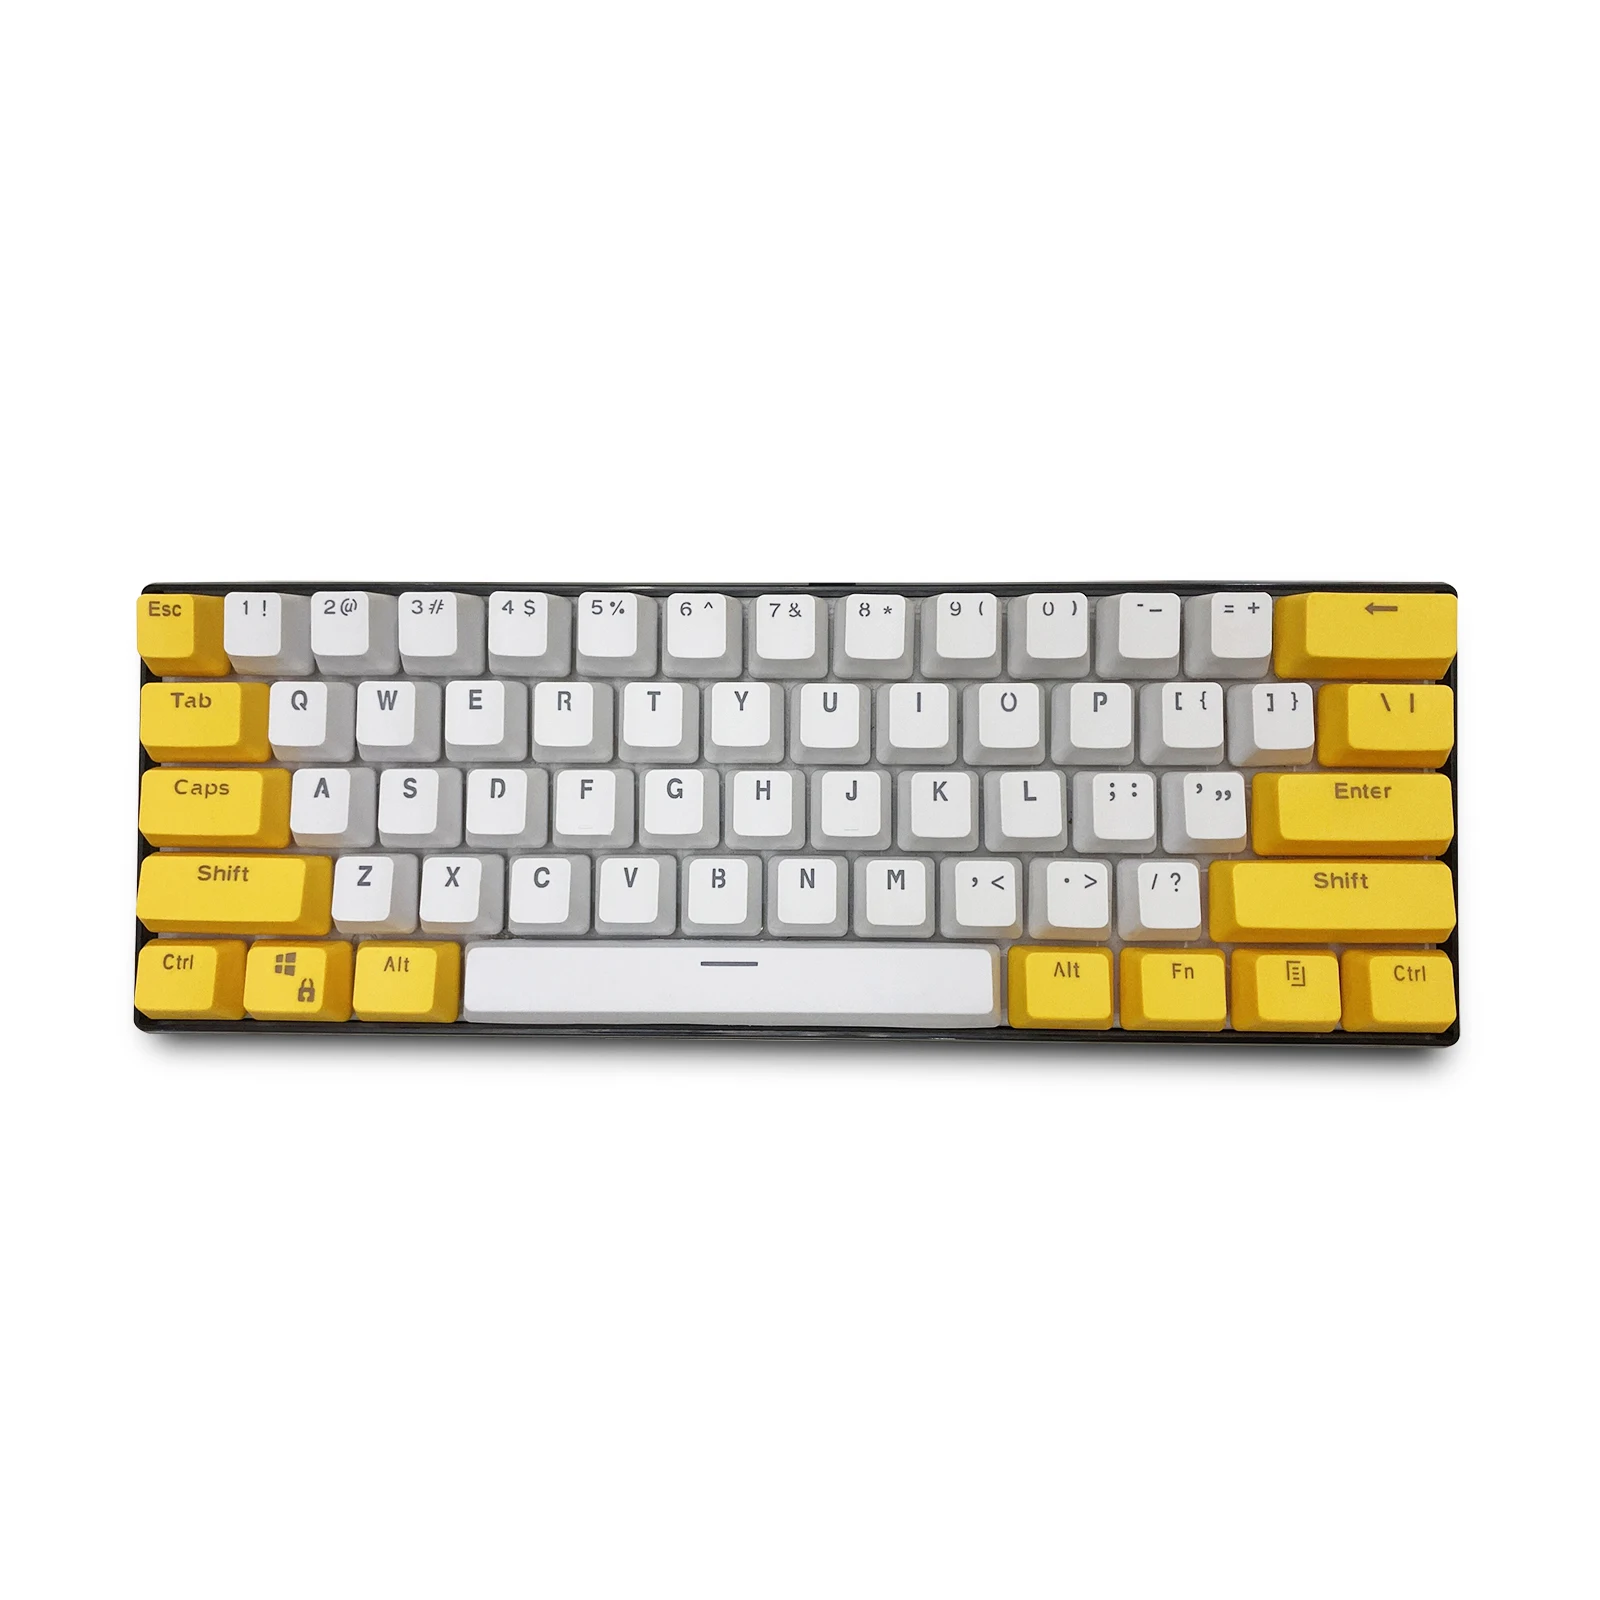 

Колпачки для клавиш RK 61, колпачки для клавиш OEM из материала PBT, двухцветные механические колпачки для клавиатуры с подсветкой (продаются только колпачки для клавиш)